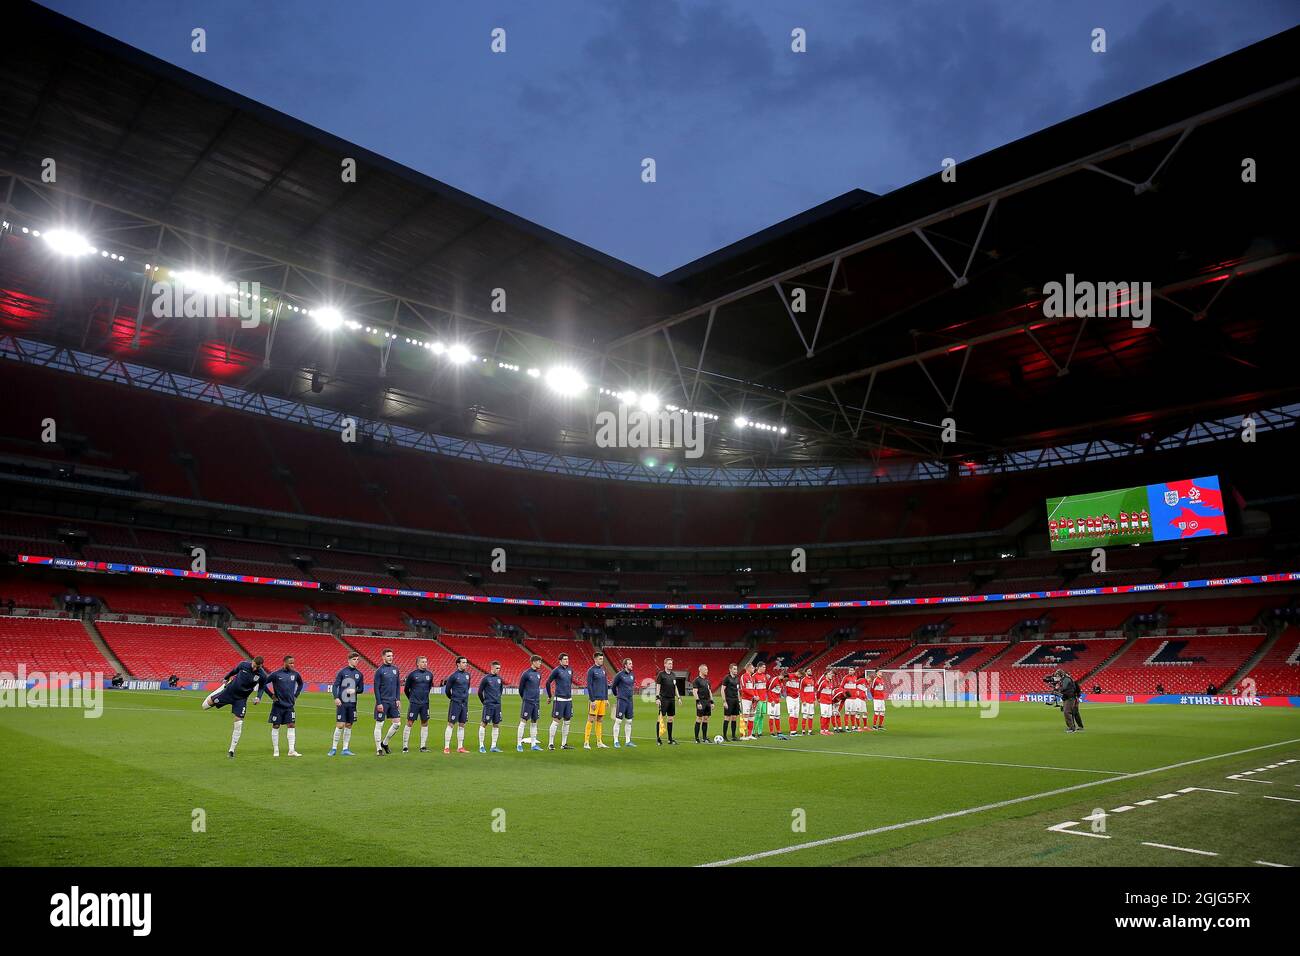 Un point de vue général de l'Angleterre et de la Pologne à partir de XI's pendant le match de football Angleterre / Pologne Banque D'Images